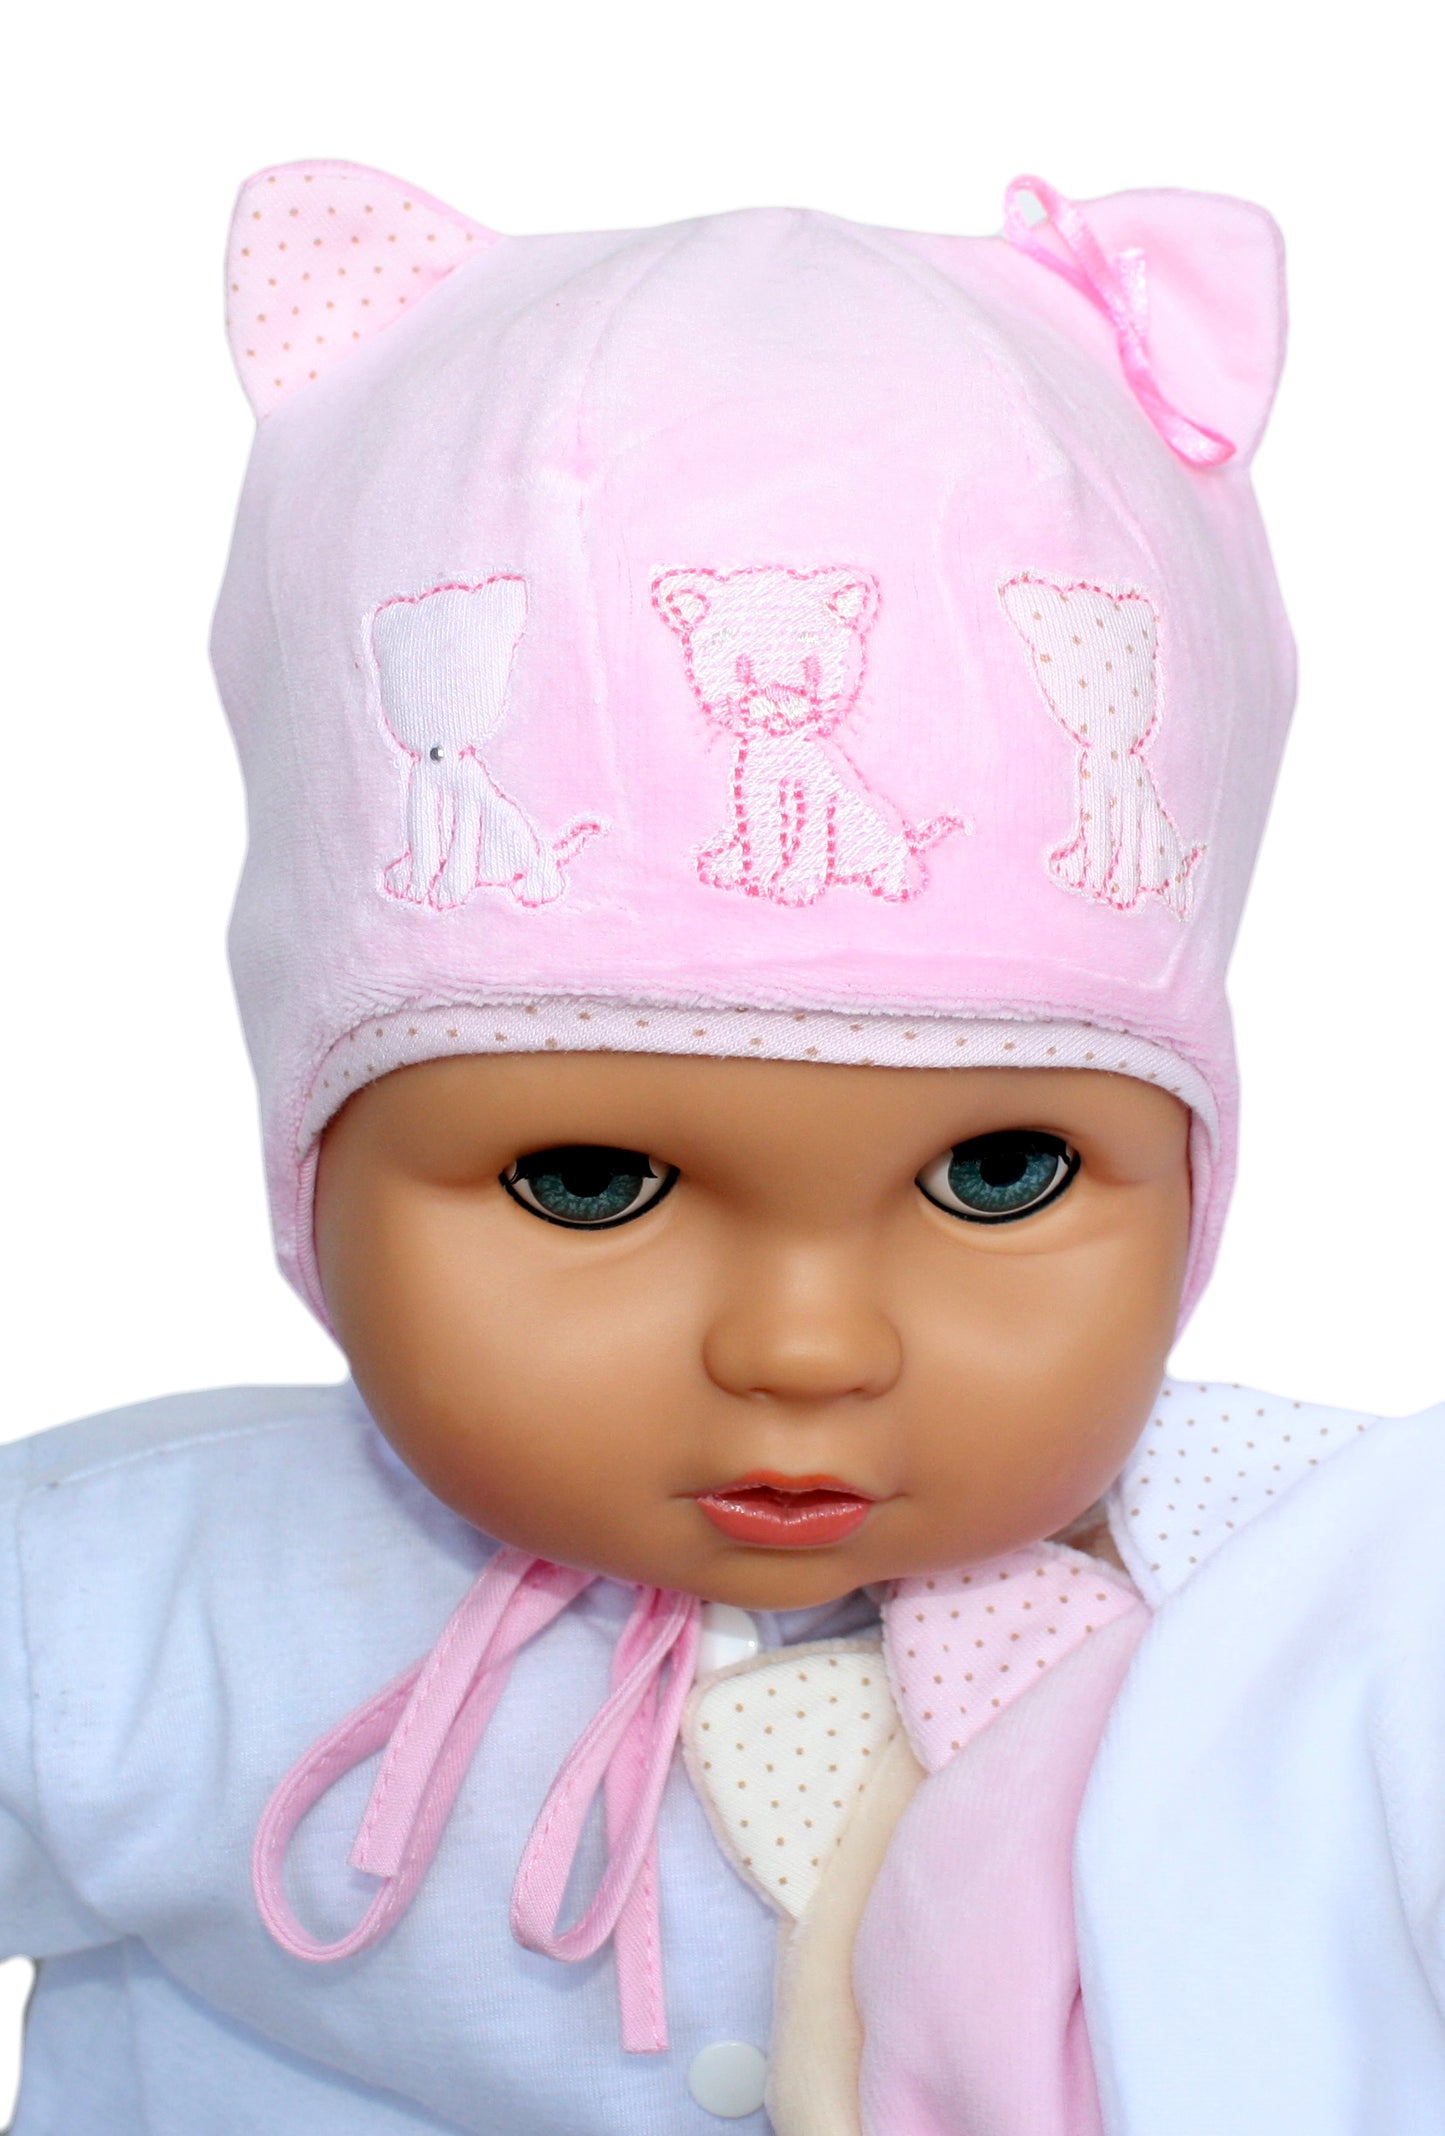 Little kittens baby girl velour hat pink, cream, white